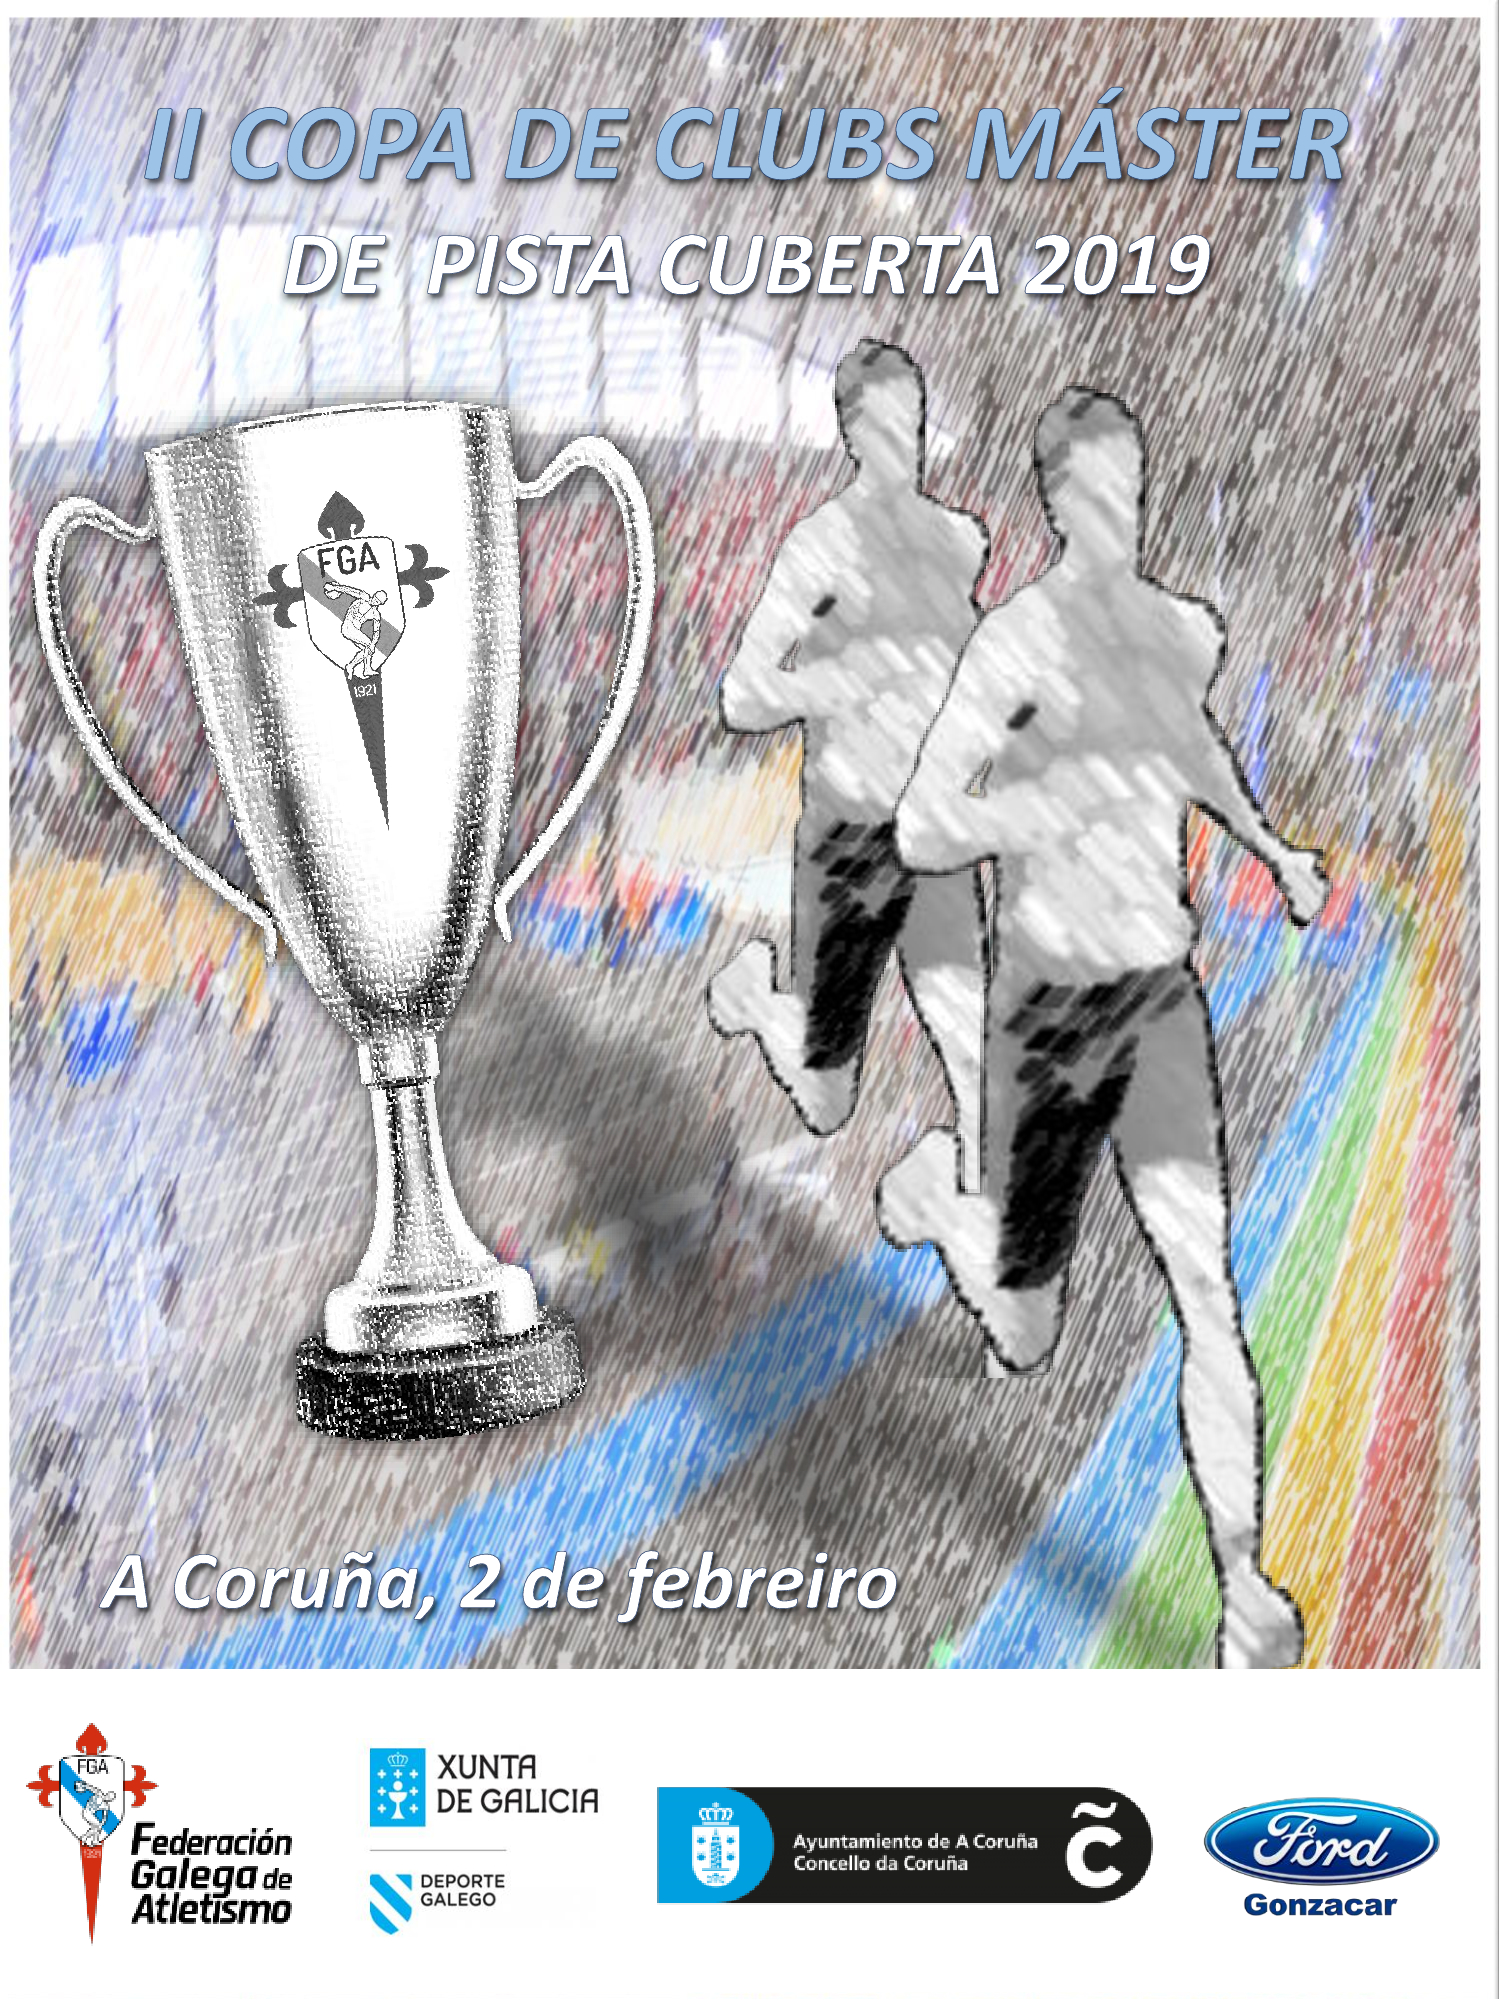 II Copa de Galicia de Clubs Máster en Pista Cuberta